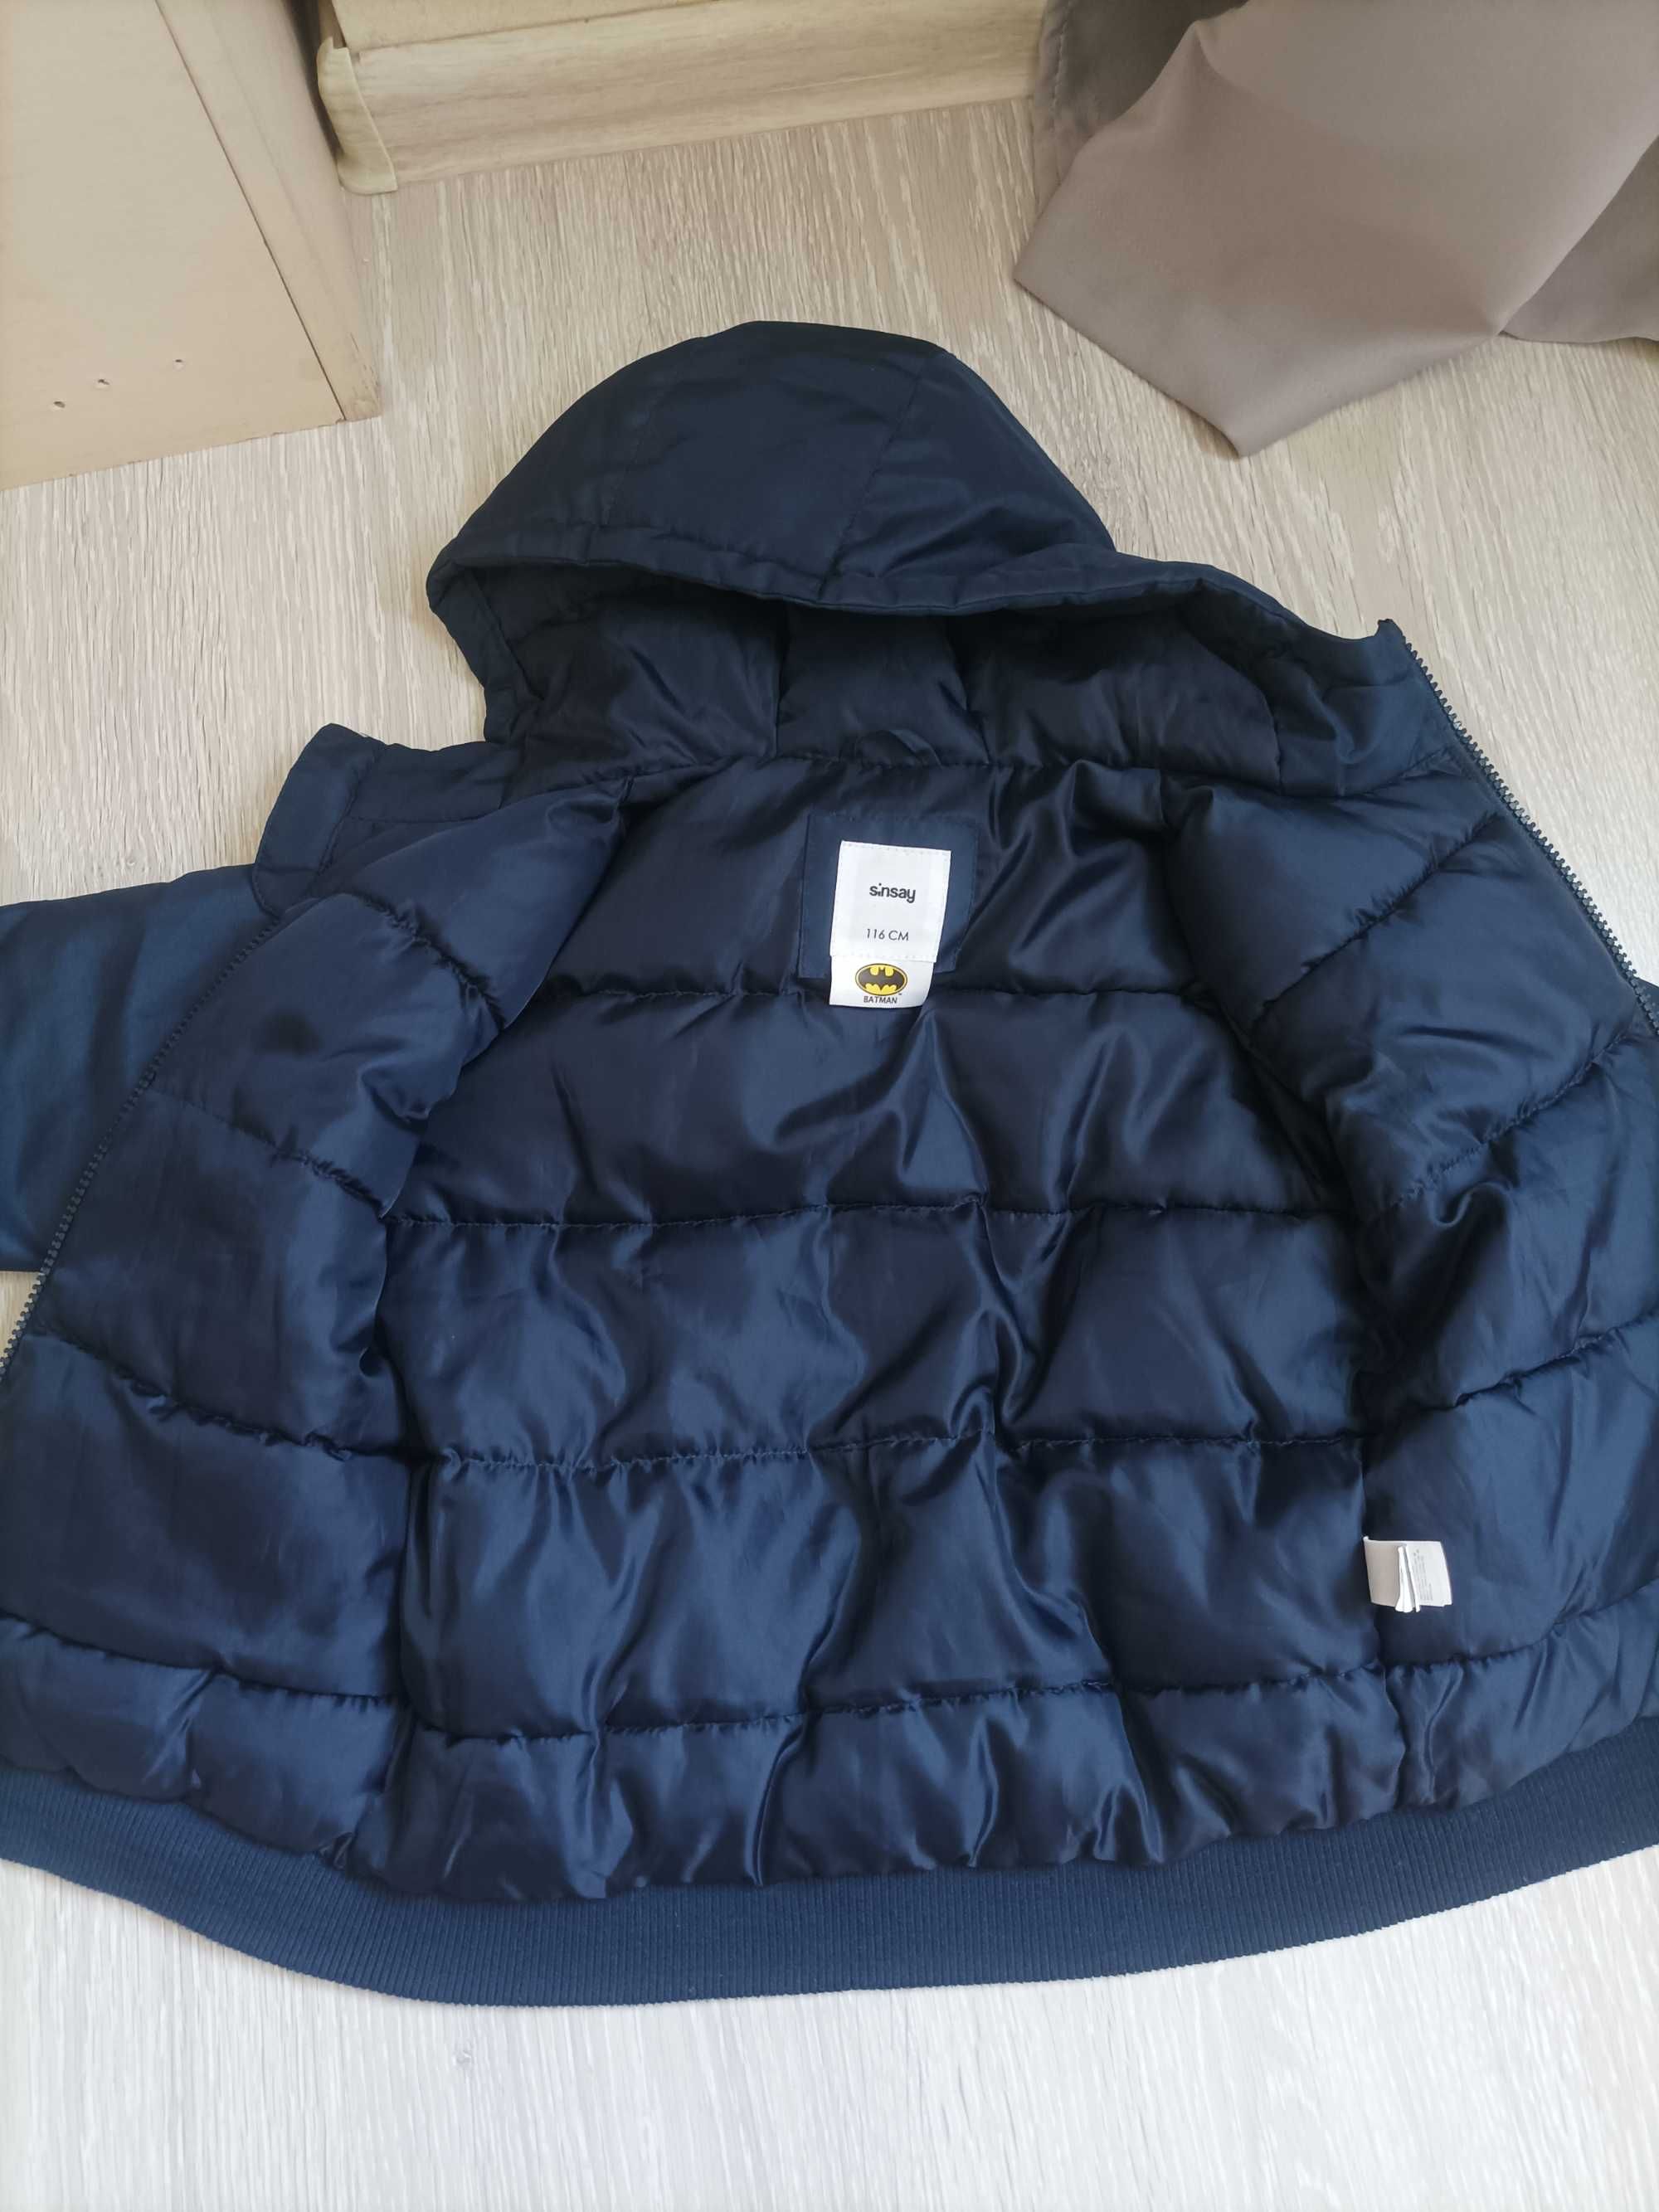 Демисезонная куртка для мальчика 110-116